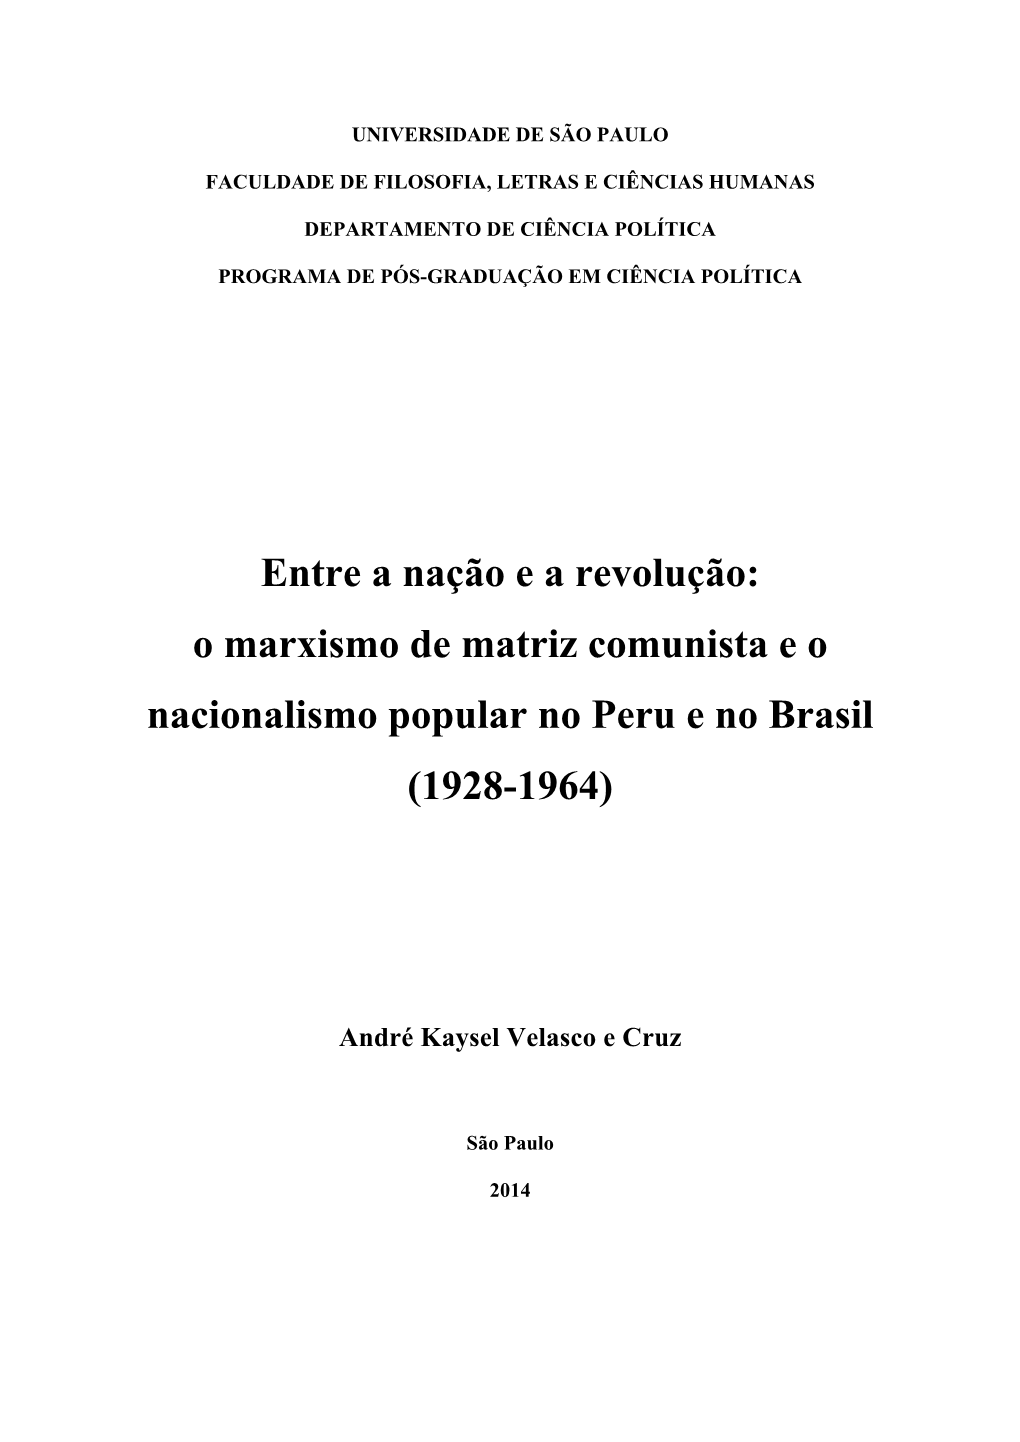 O Marxismo De Matriz Comunista E O Nacionalismo Popular No Peru E No Brasil (1928-1964)